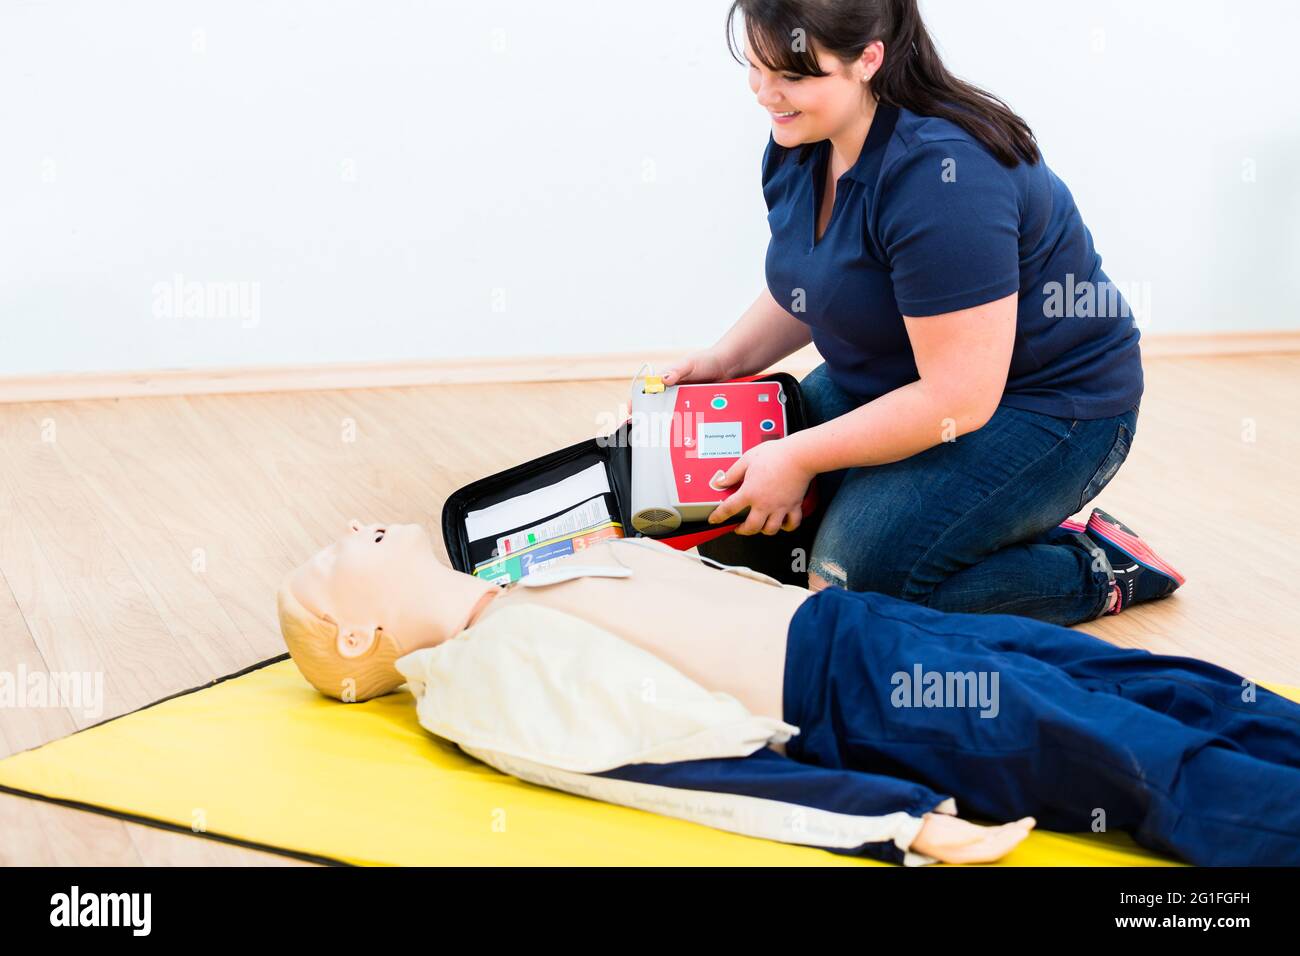 Le secouriste réapprend l'apprentissage avec un défibrillateur dans le cadre d'une formation de premiers secours Banque D'Images